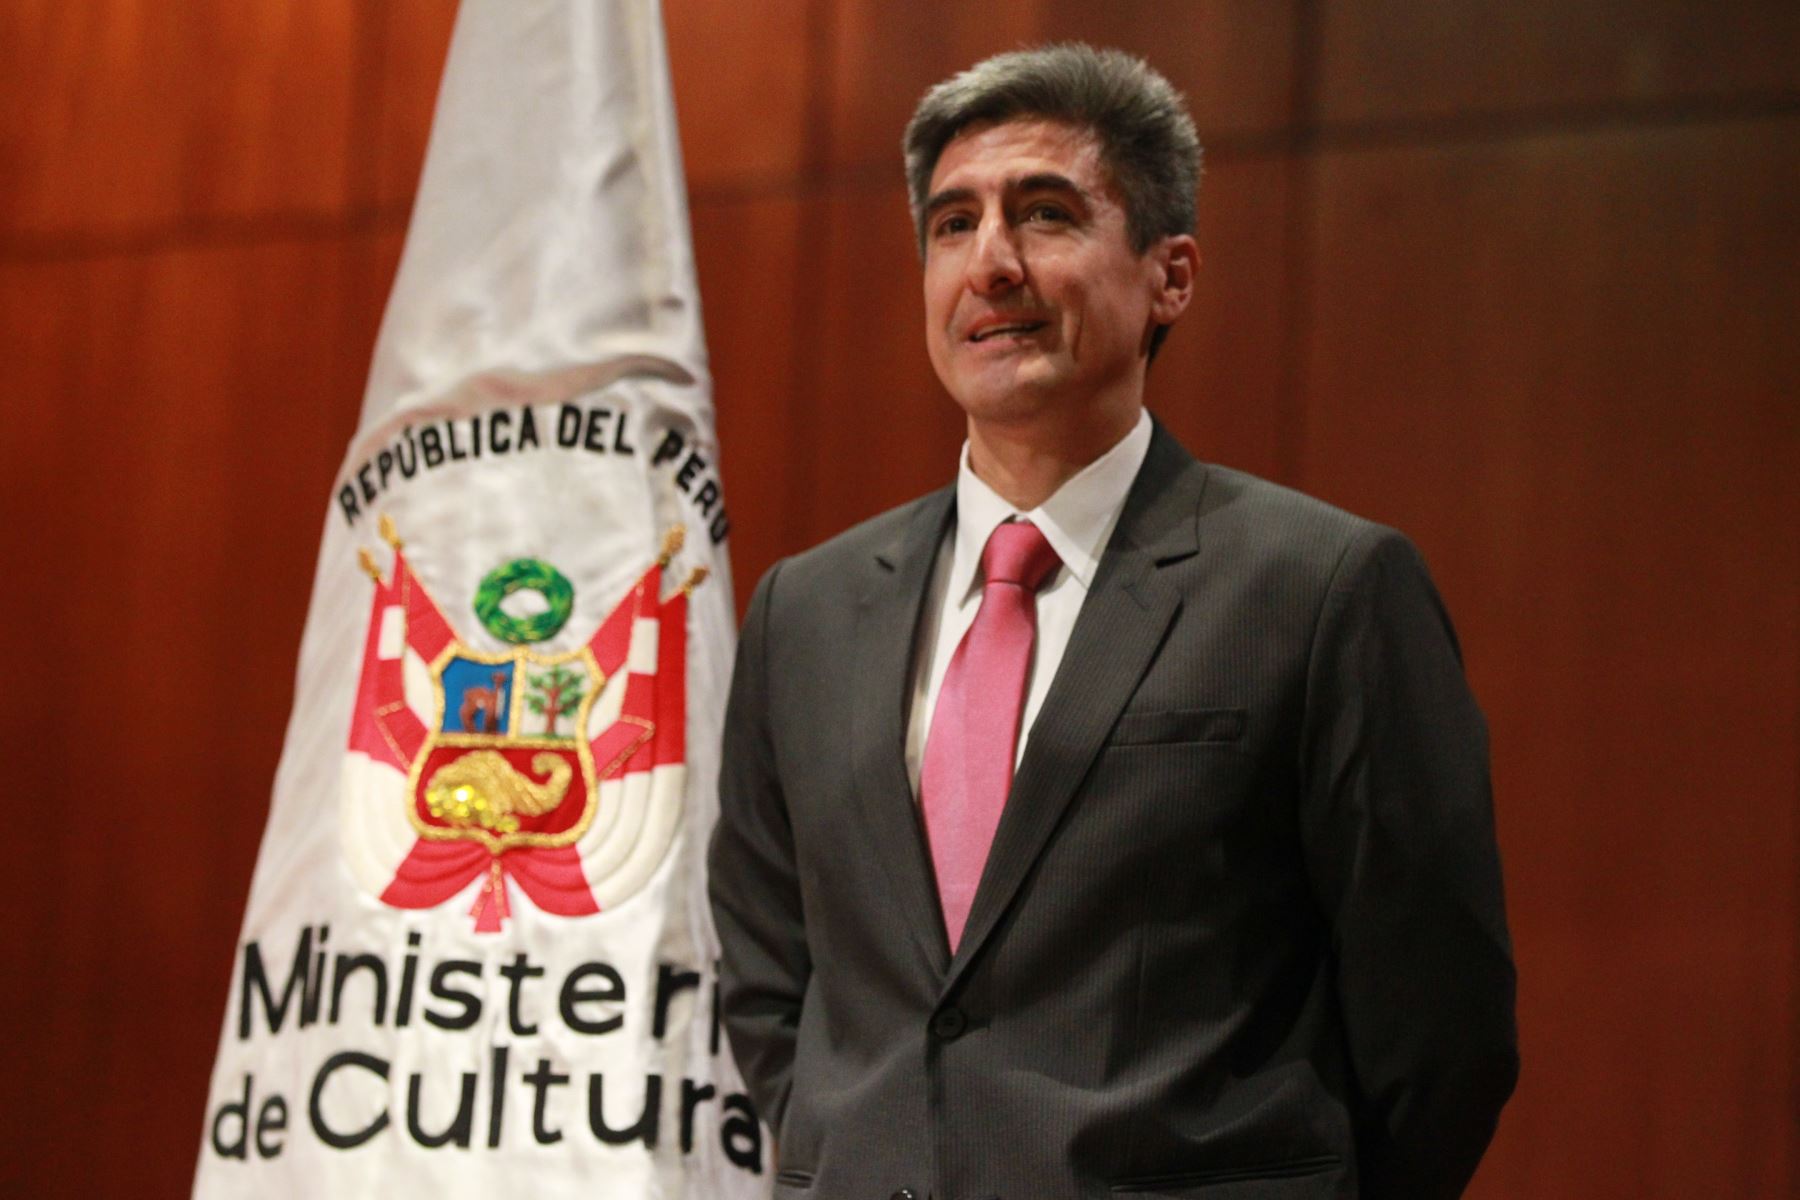 LIMA PERÚ - ENERO 11. Ceremonia de presentación oficial del ministro de Cultura Alejandro Neyra Sanchez. Foto: ANDINA/Dante Zegarra.